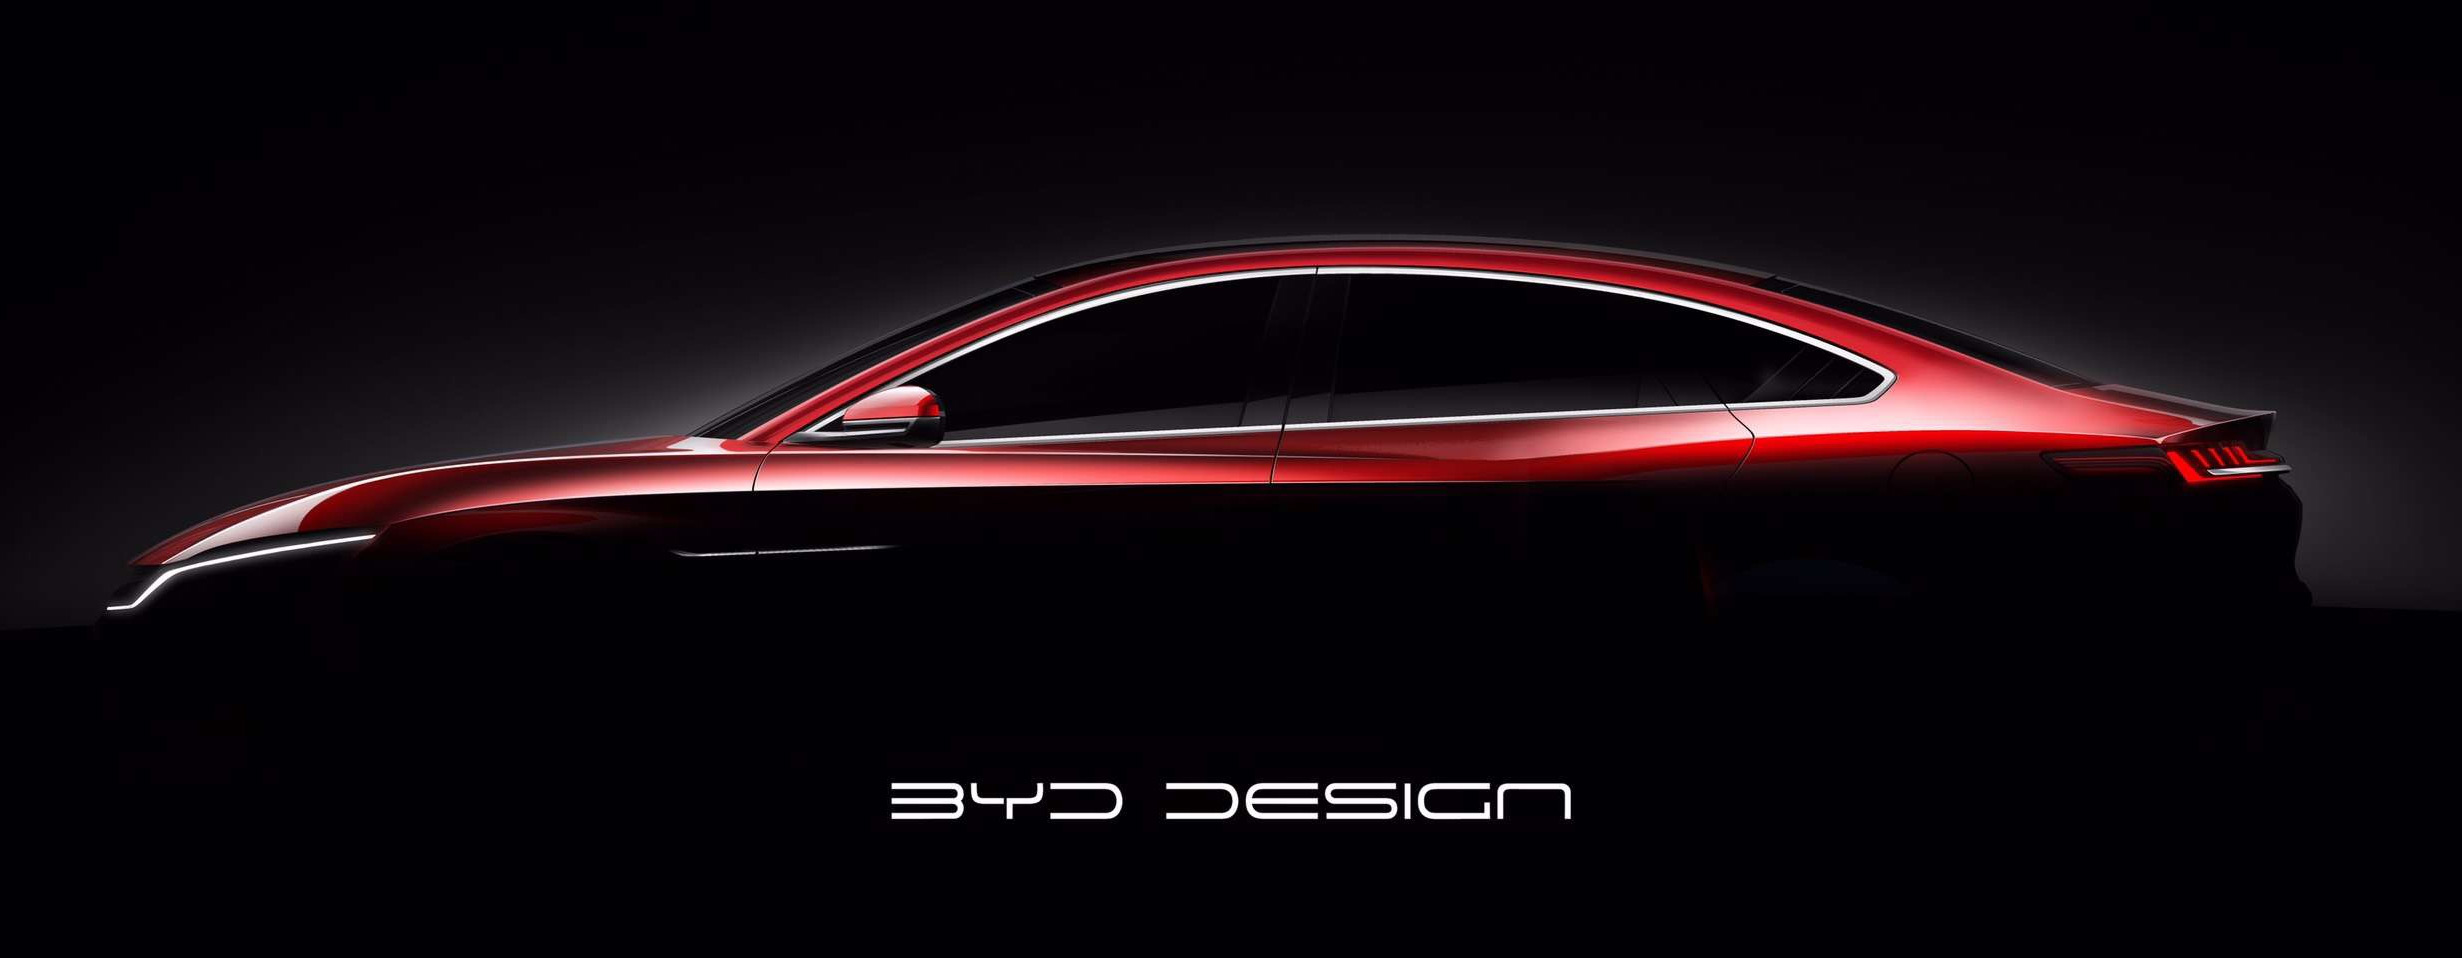 Çinli üretici BYD, elektrikli sedan modeli Han'ın görsellerini paylaştı